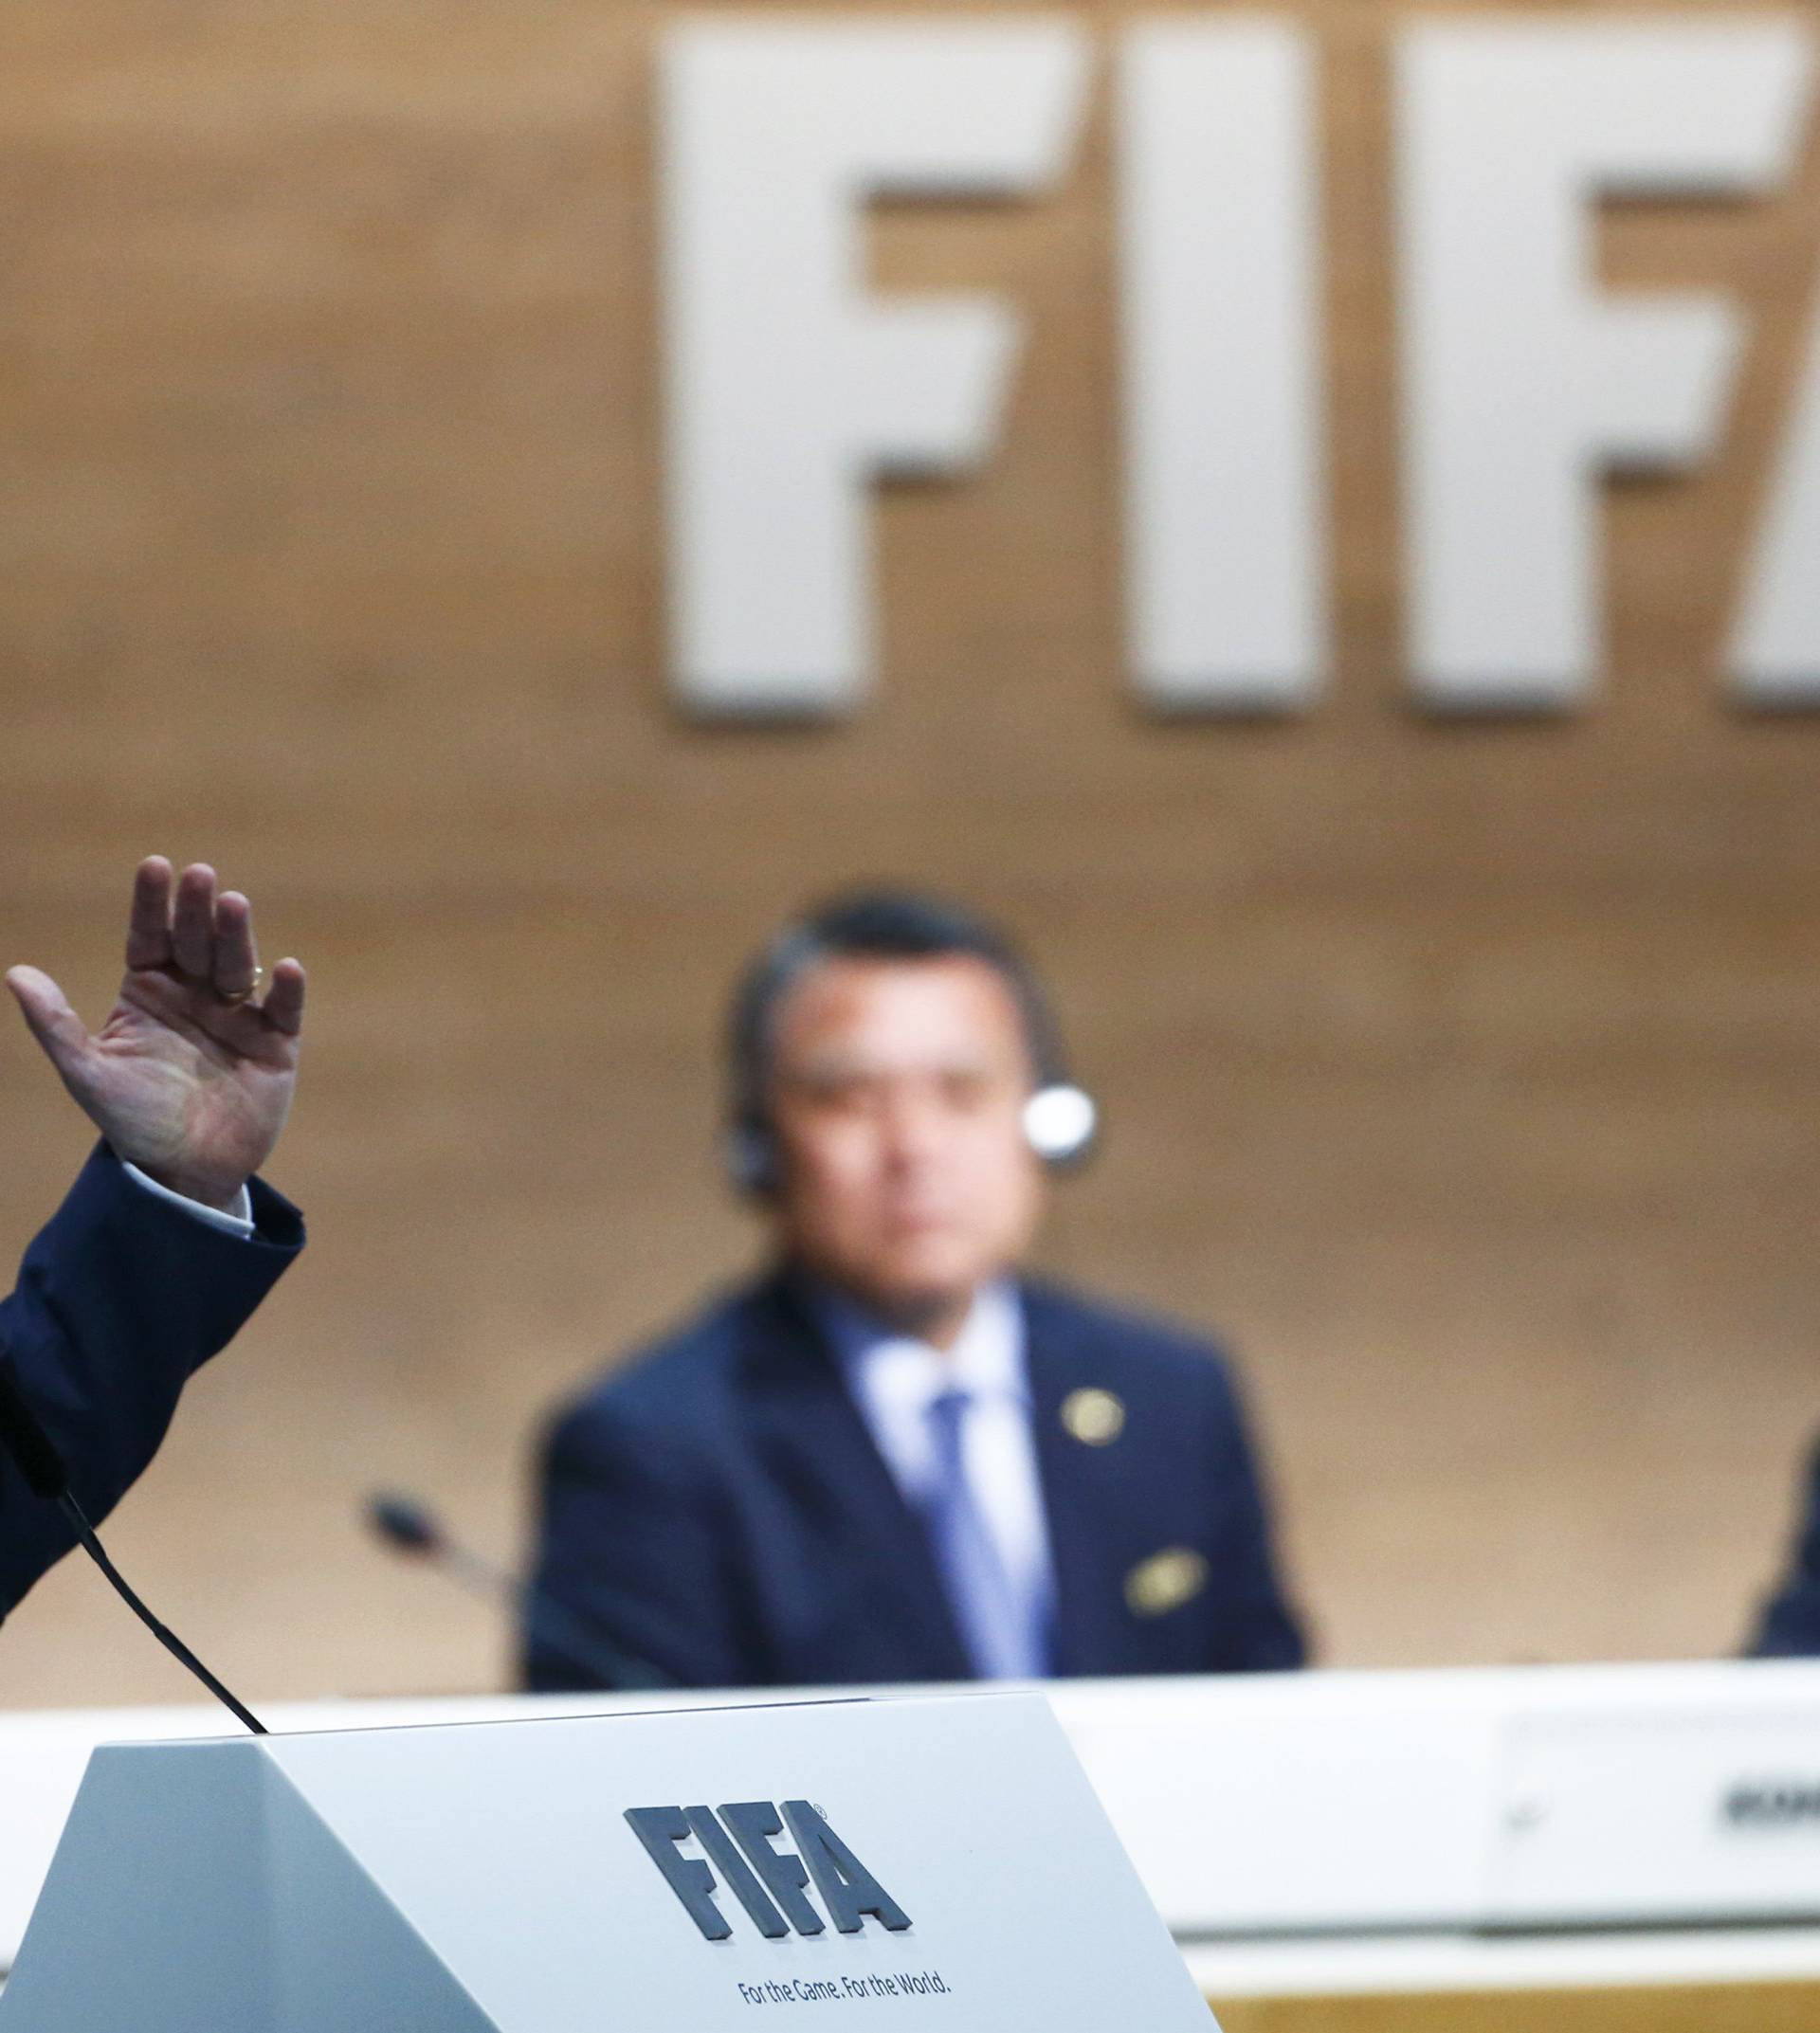 Nova era: Gianni Infantino je izabran za predsjednika Fife!